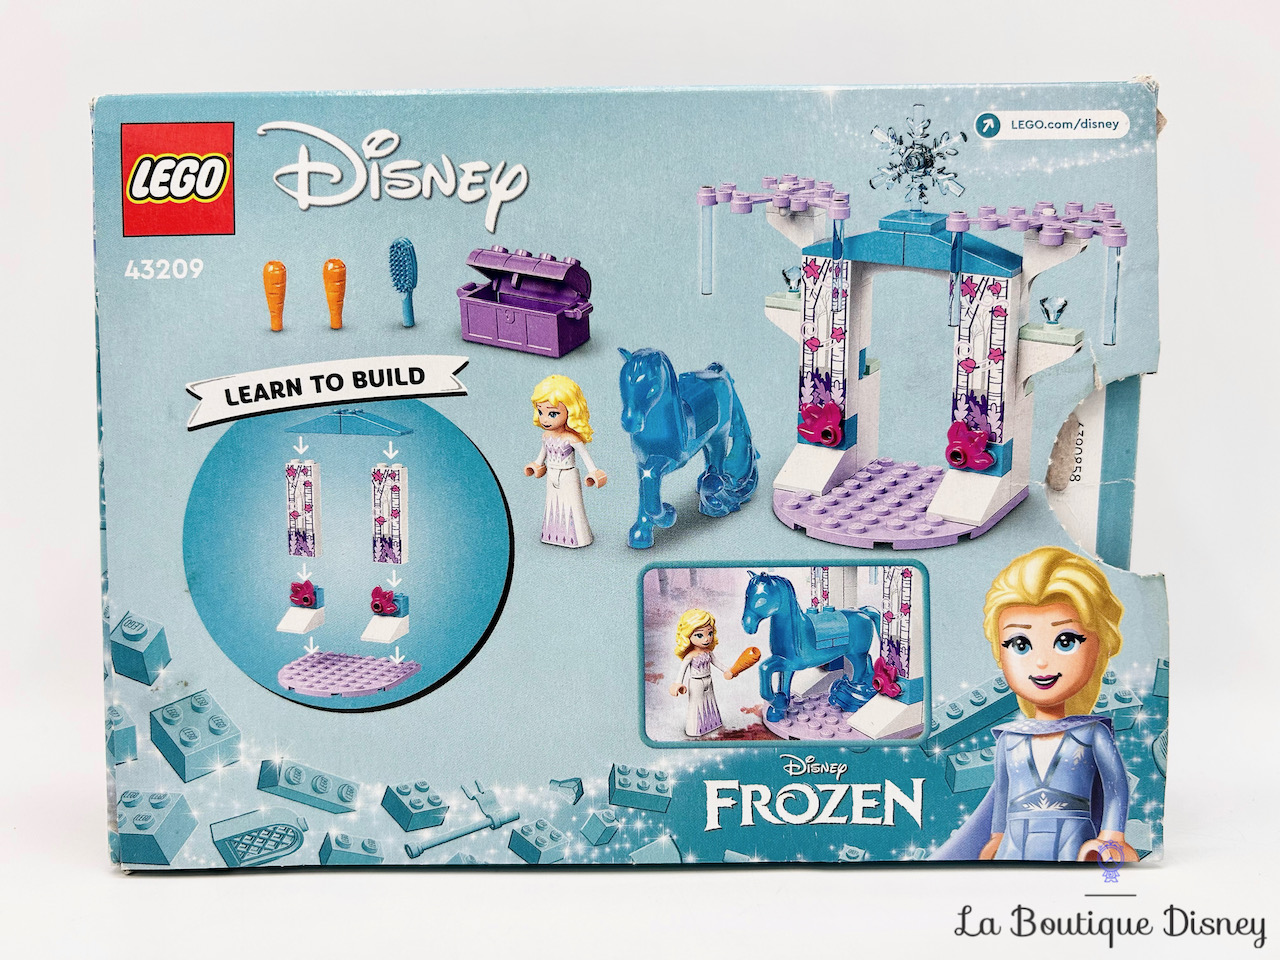 jouet-lego-43209-elsa-écurie-glace-nokk-la-reine-des-neiges-disney-frozen-4